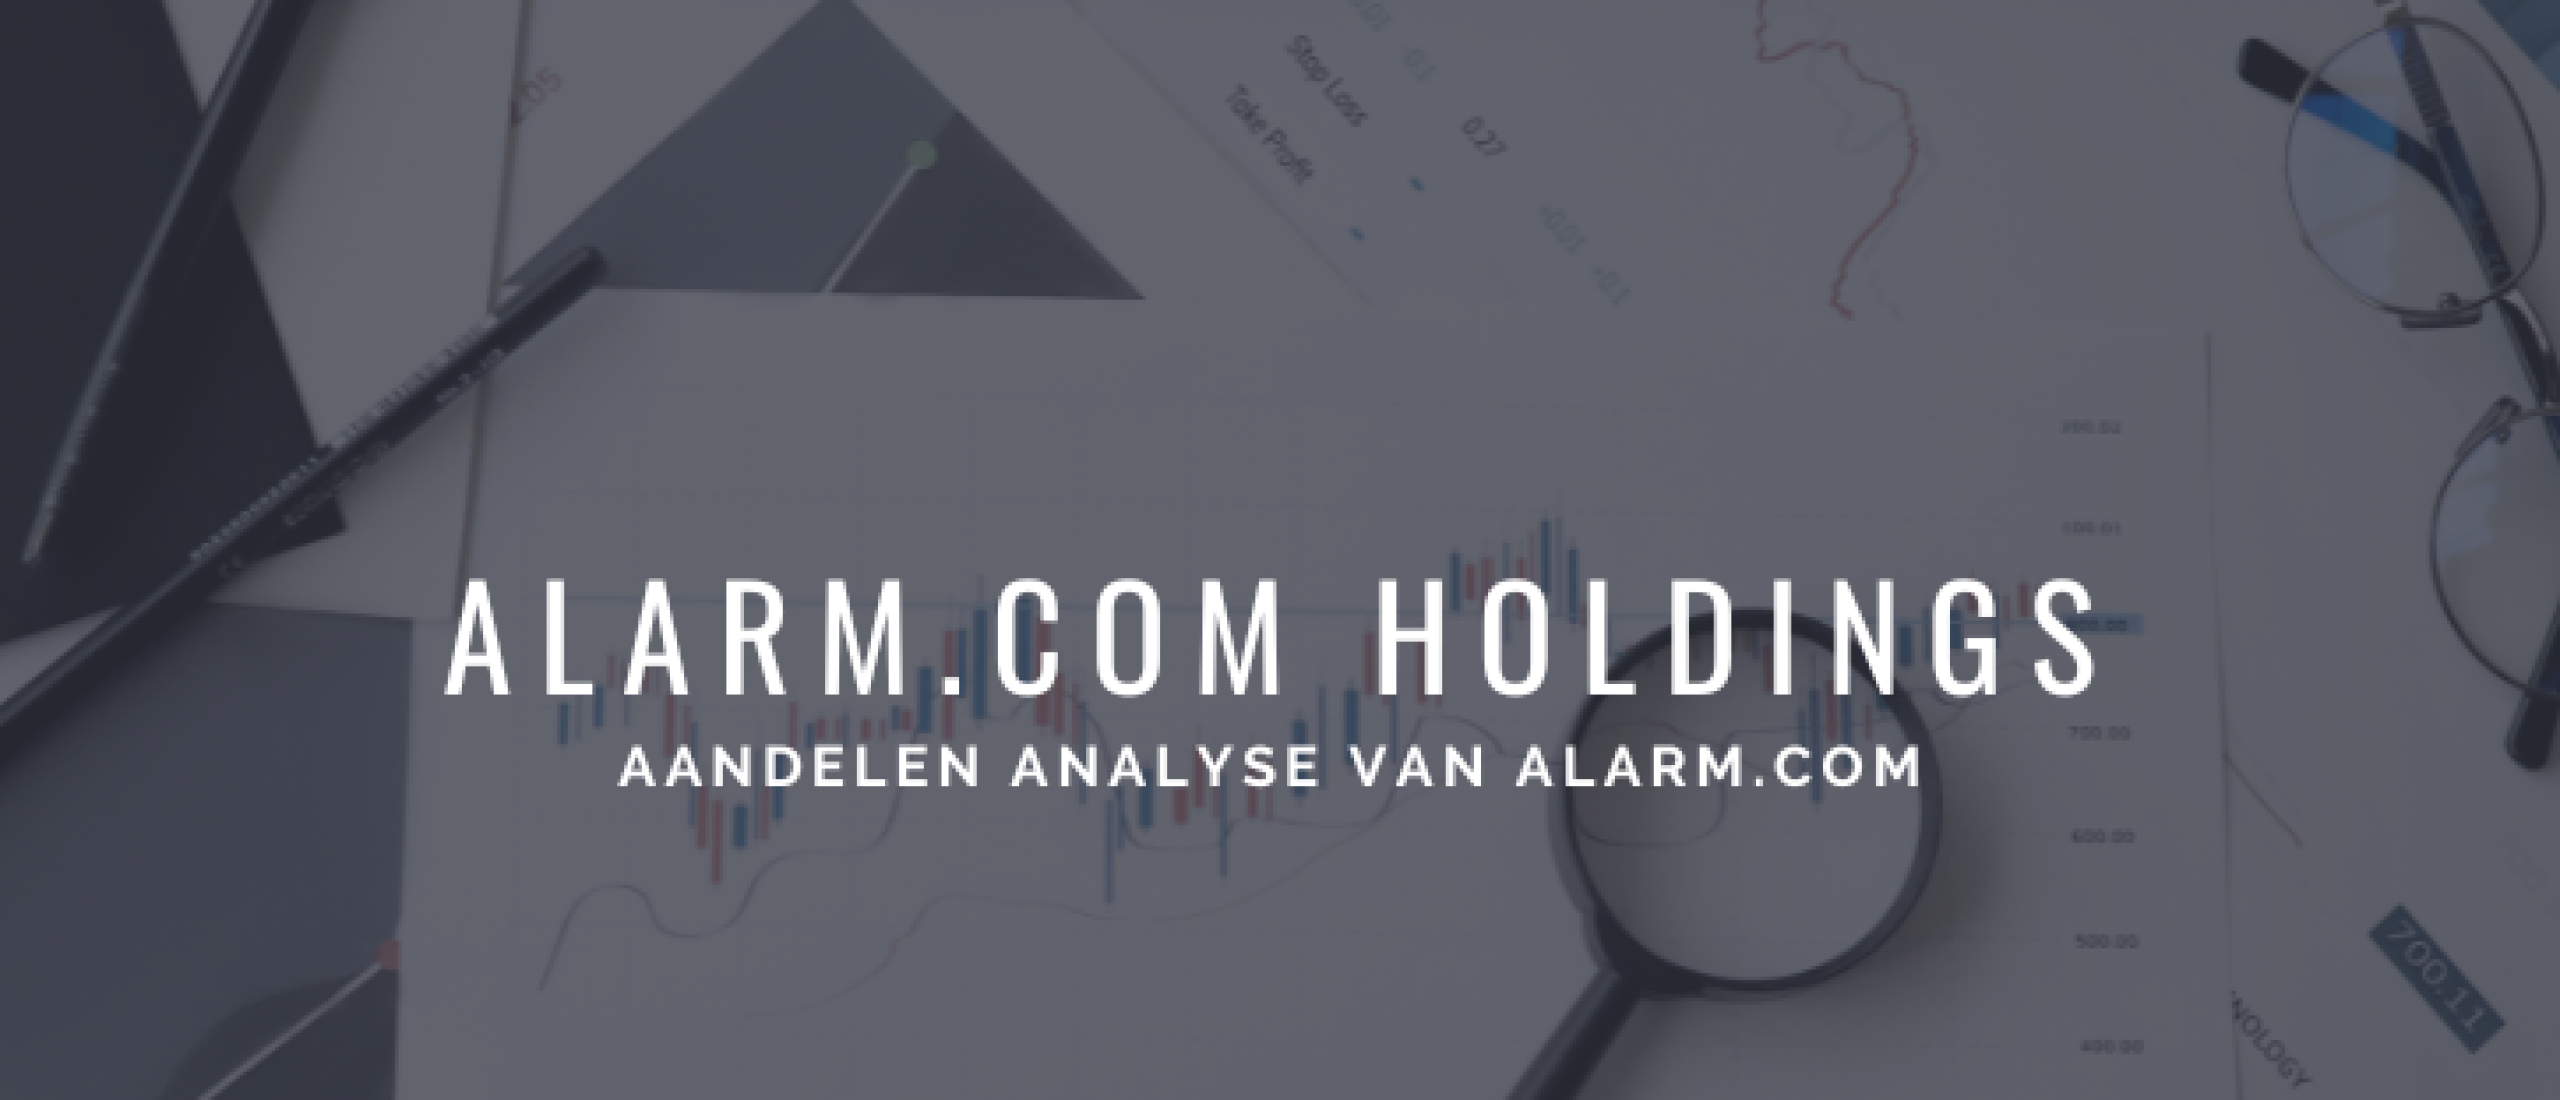 alarm-com-aandelen-kopen